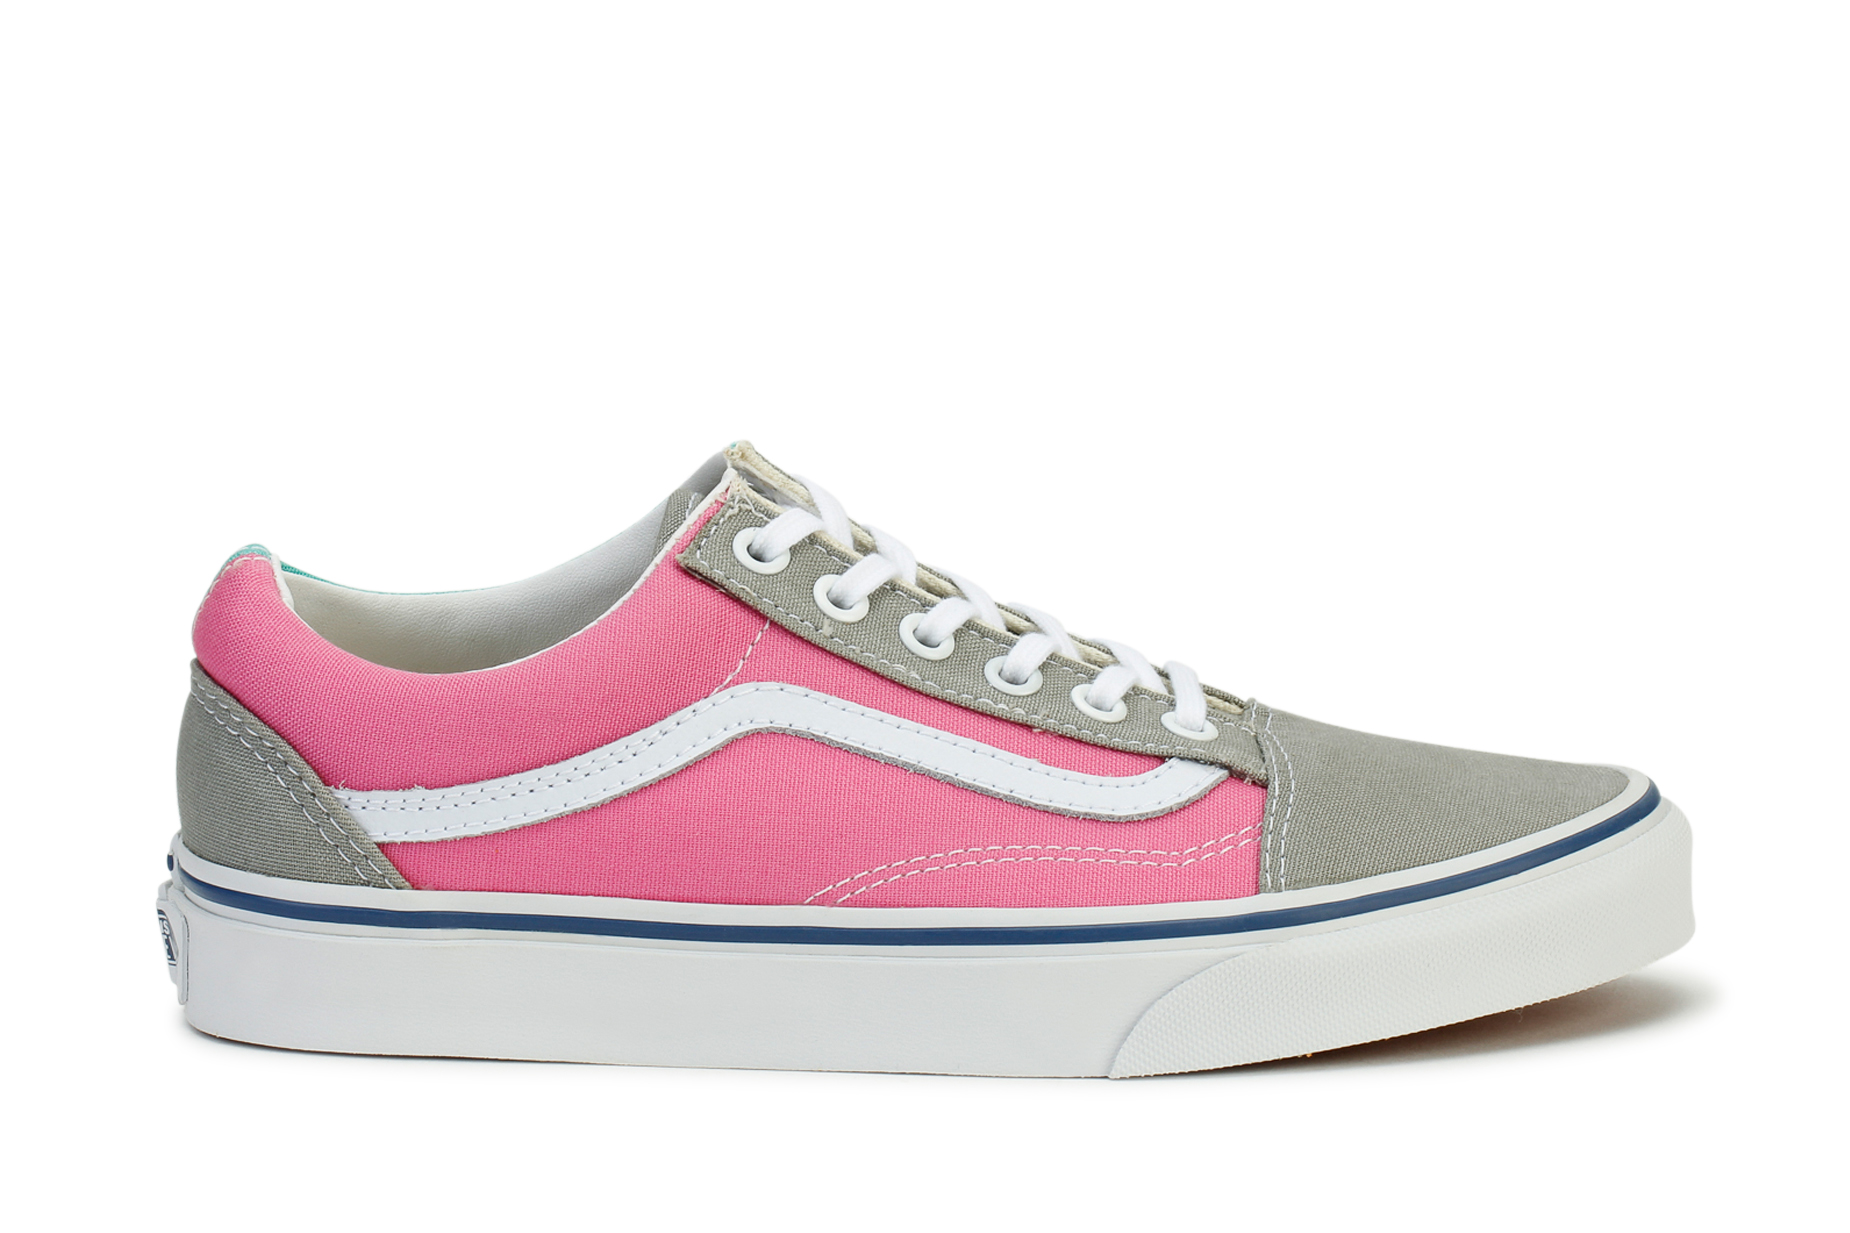 Vans Womens Old Skool Tri Tone Sneakers Neutral Gray / Pink | eBay